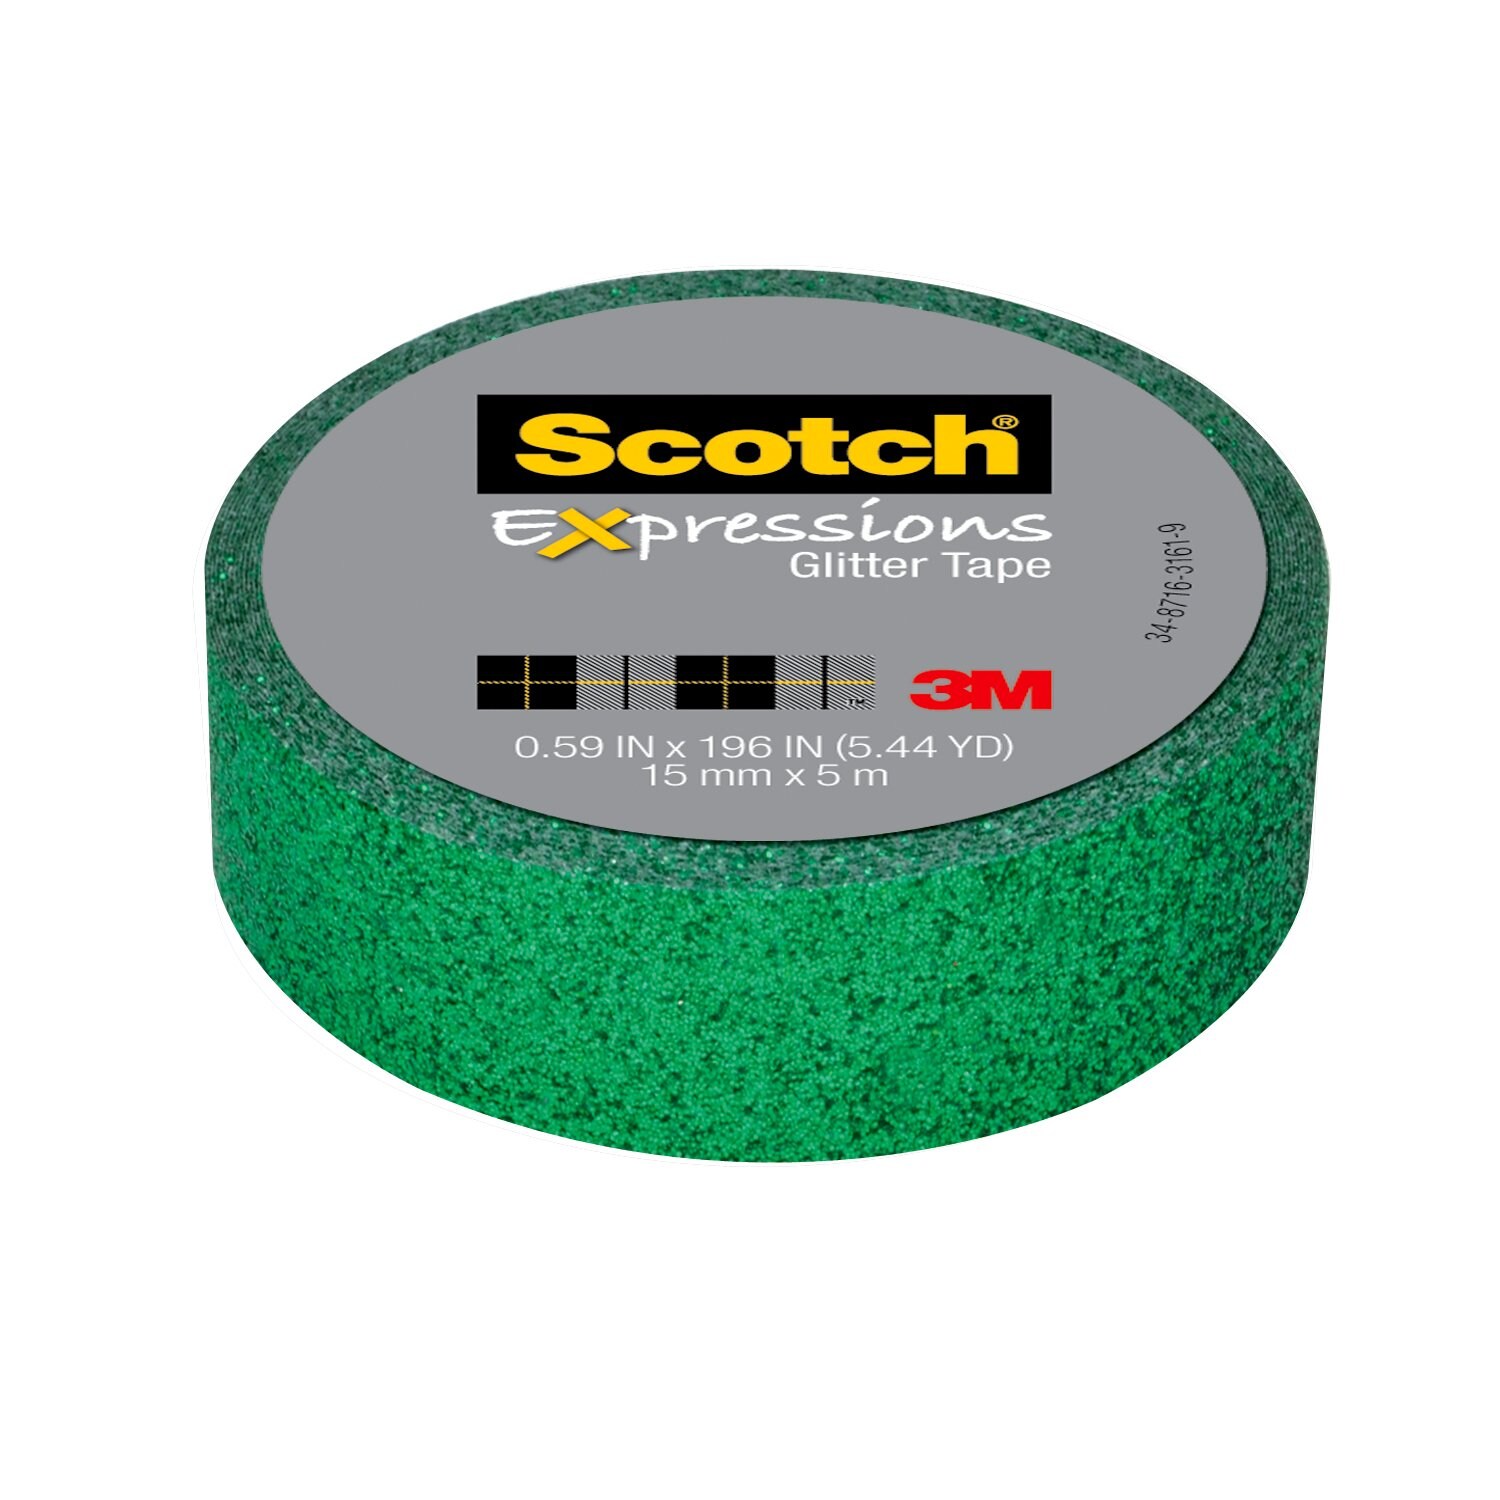 7010332948 - Scotch Expressions Glitter Tape C514-GRN2, .59 in x 196 in (15 mm x 5
m) Dark Green Glitter